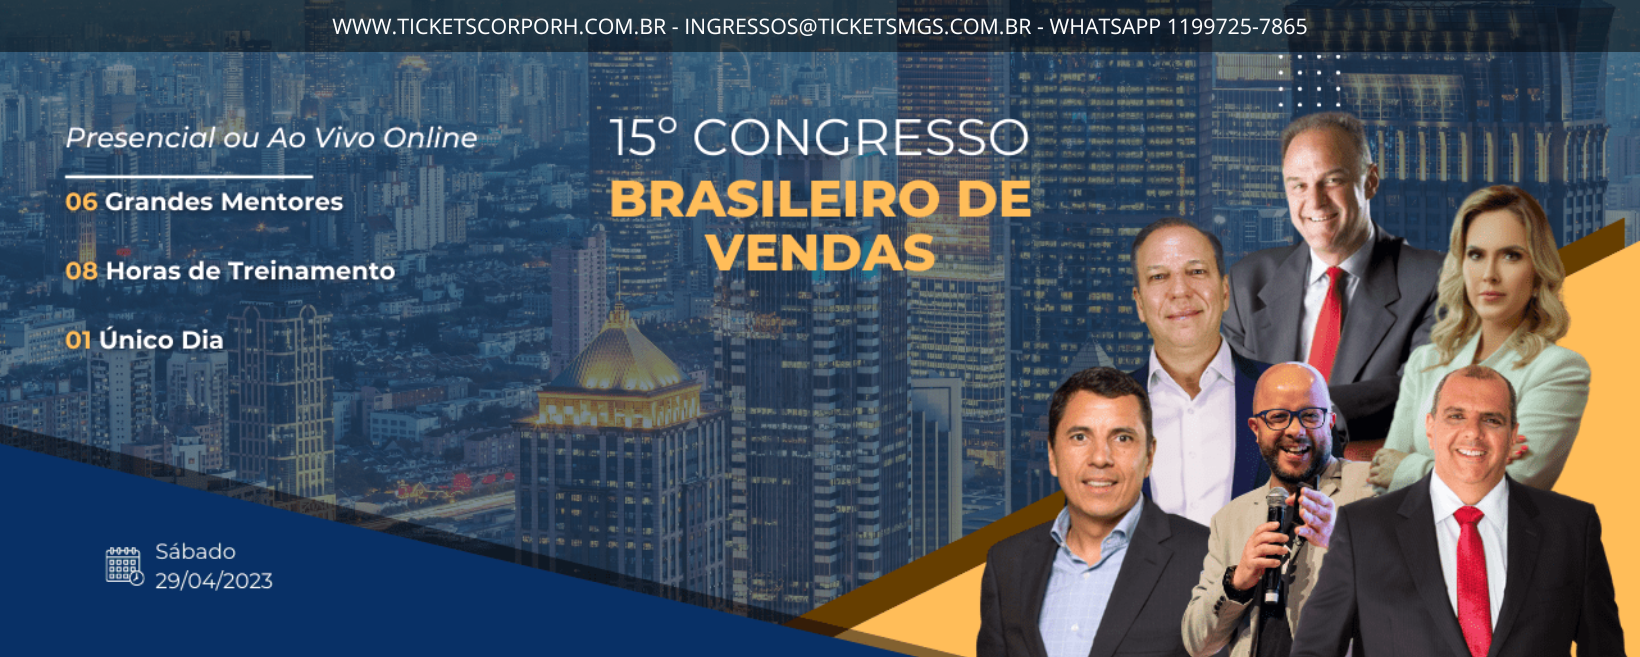 15º Congresso Brasileiro de Vendas